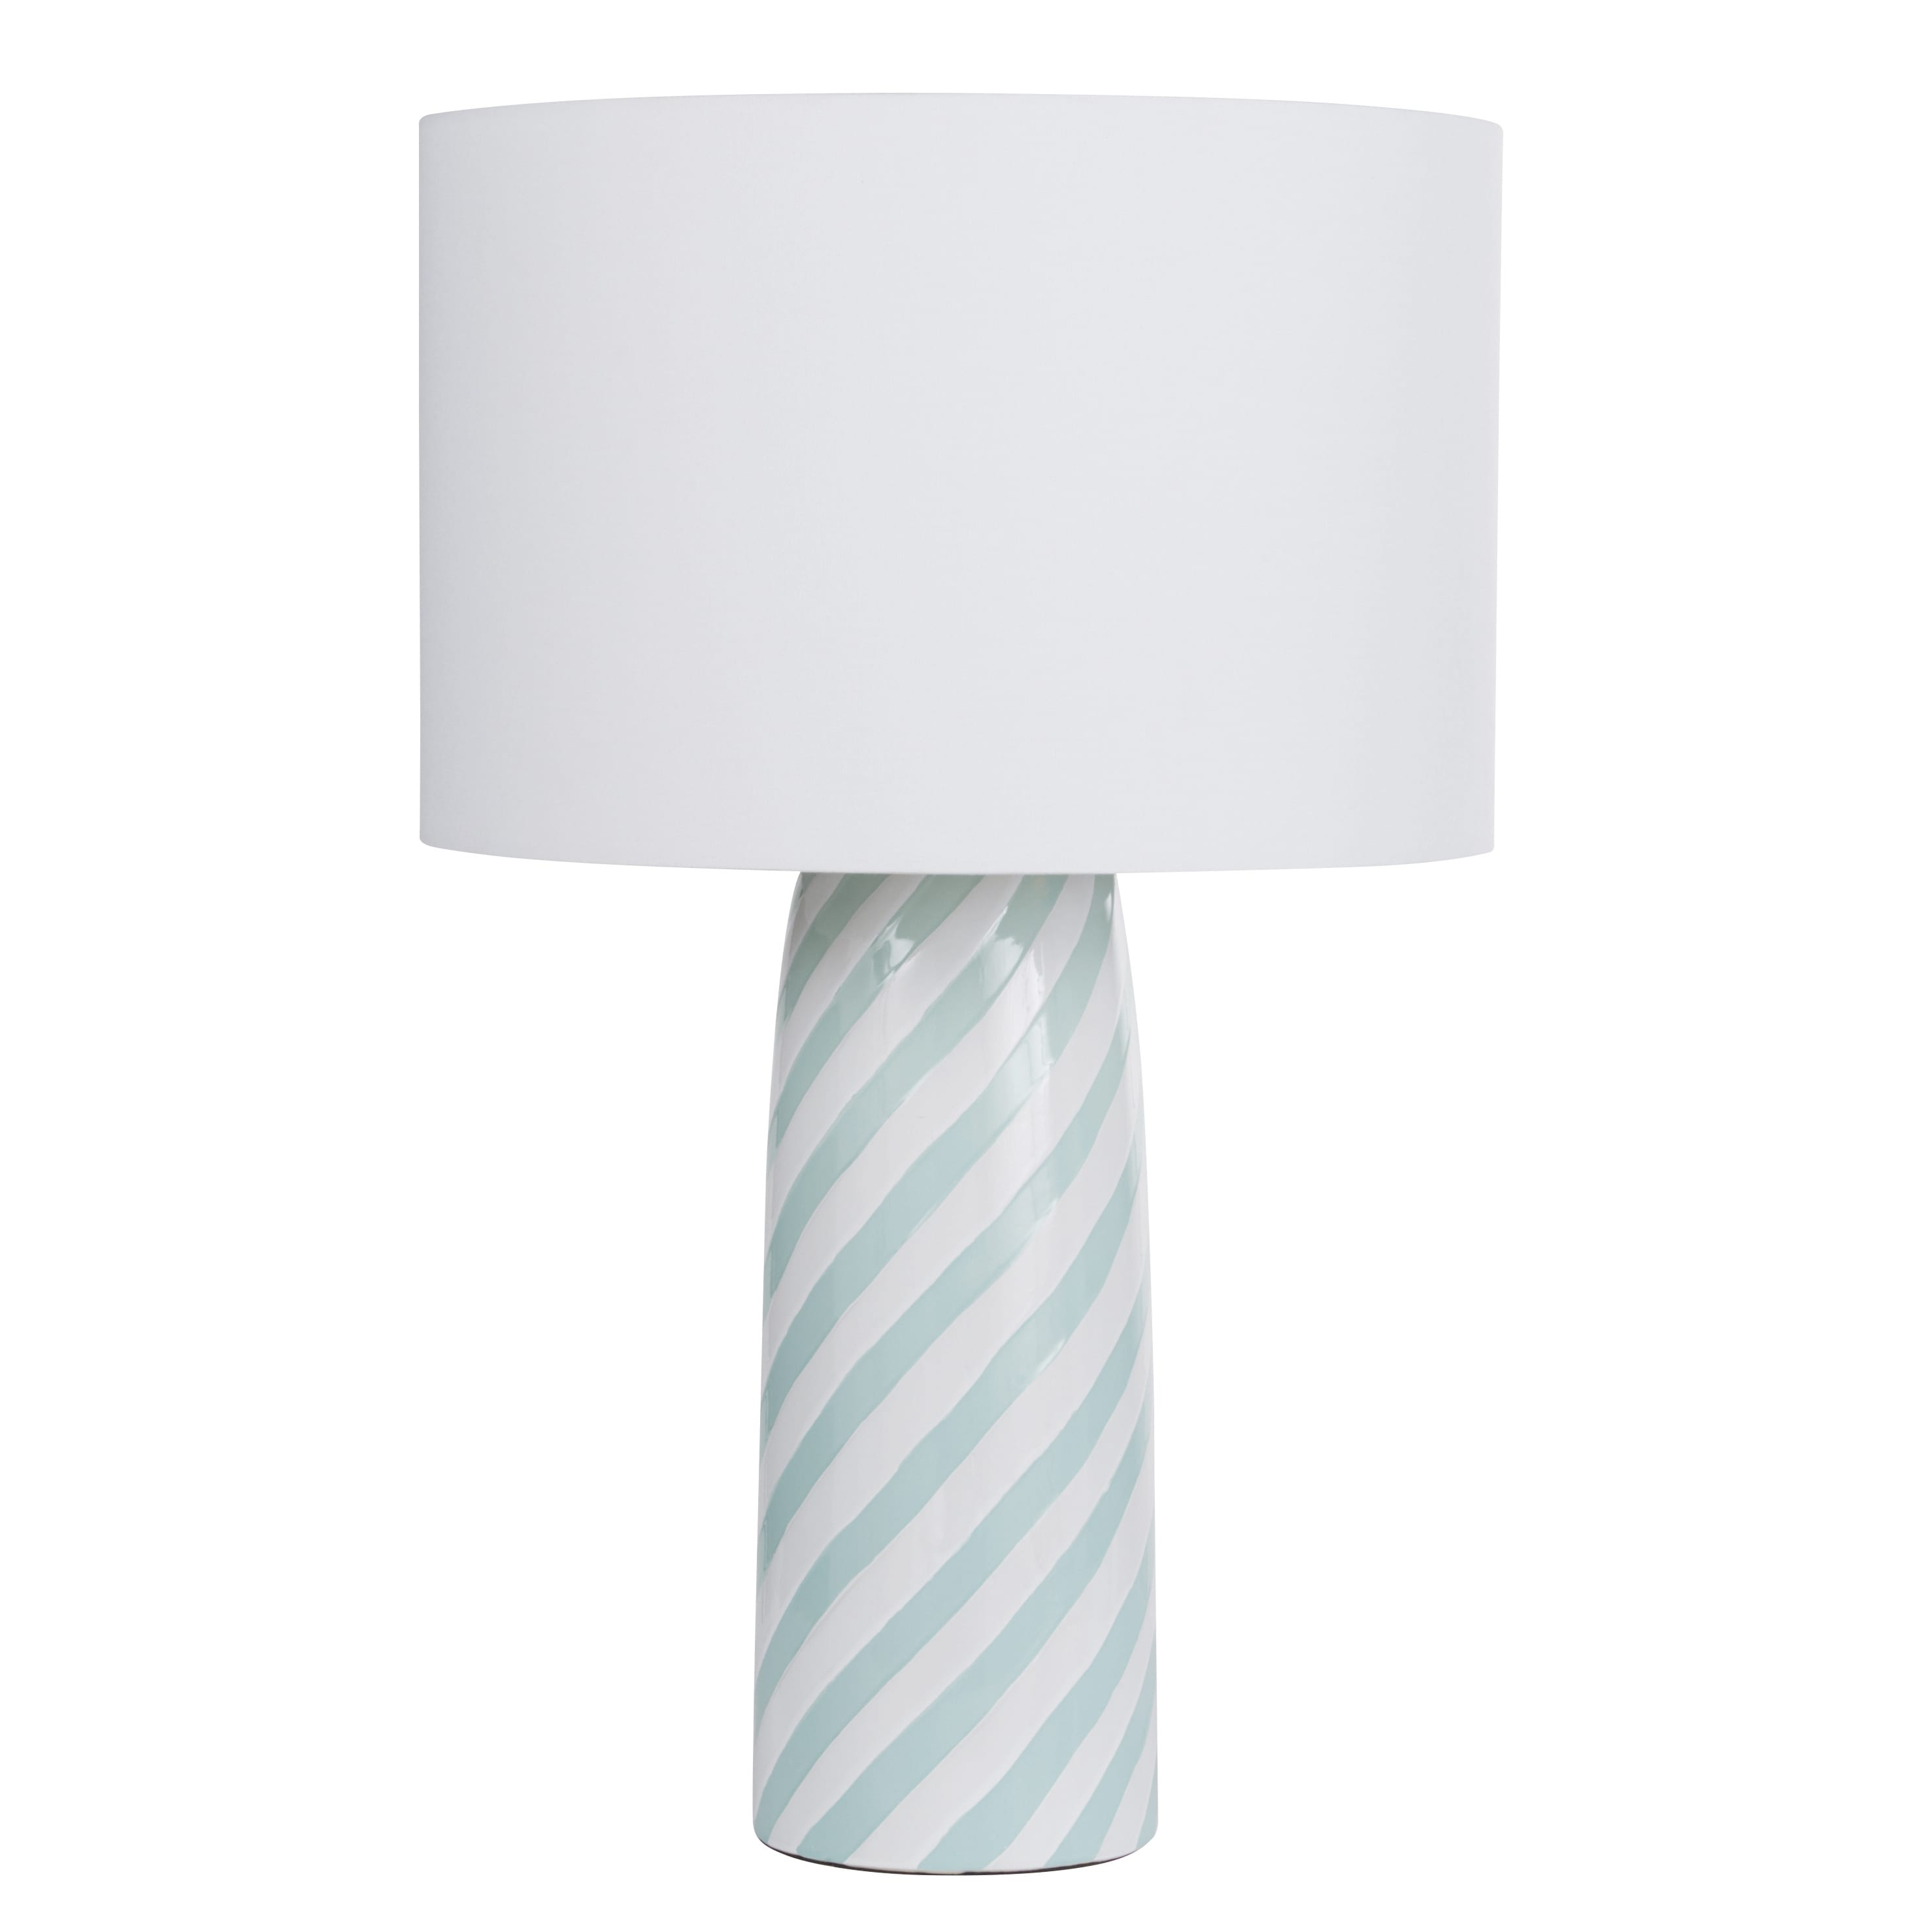 lampe en céramique blanche et bleue et abat-jour en polyester recyclé blanc